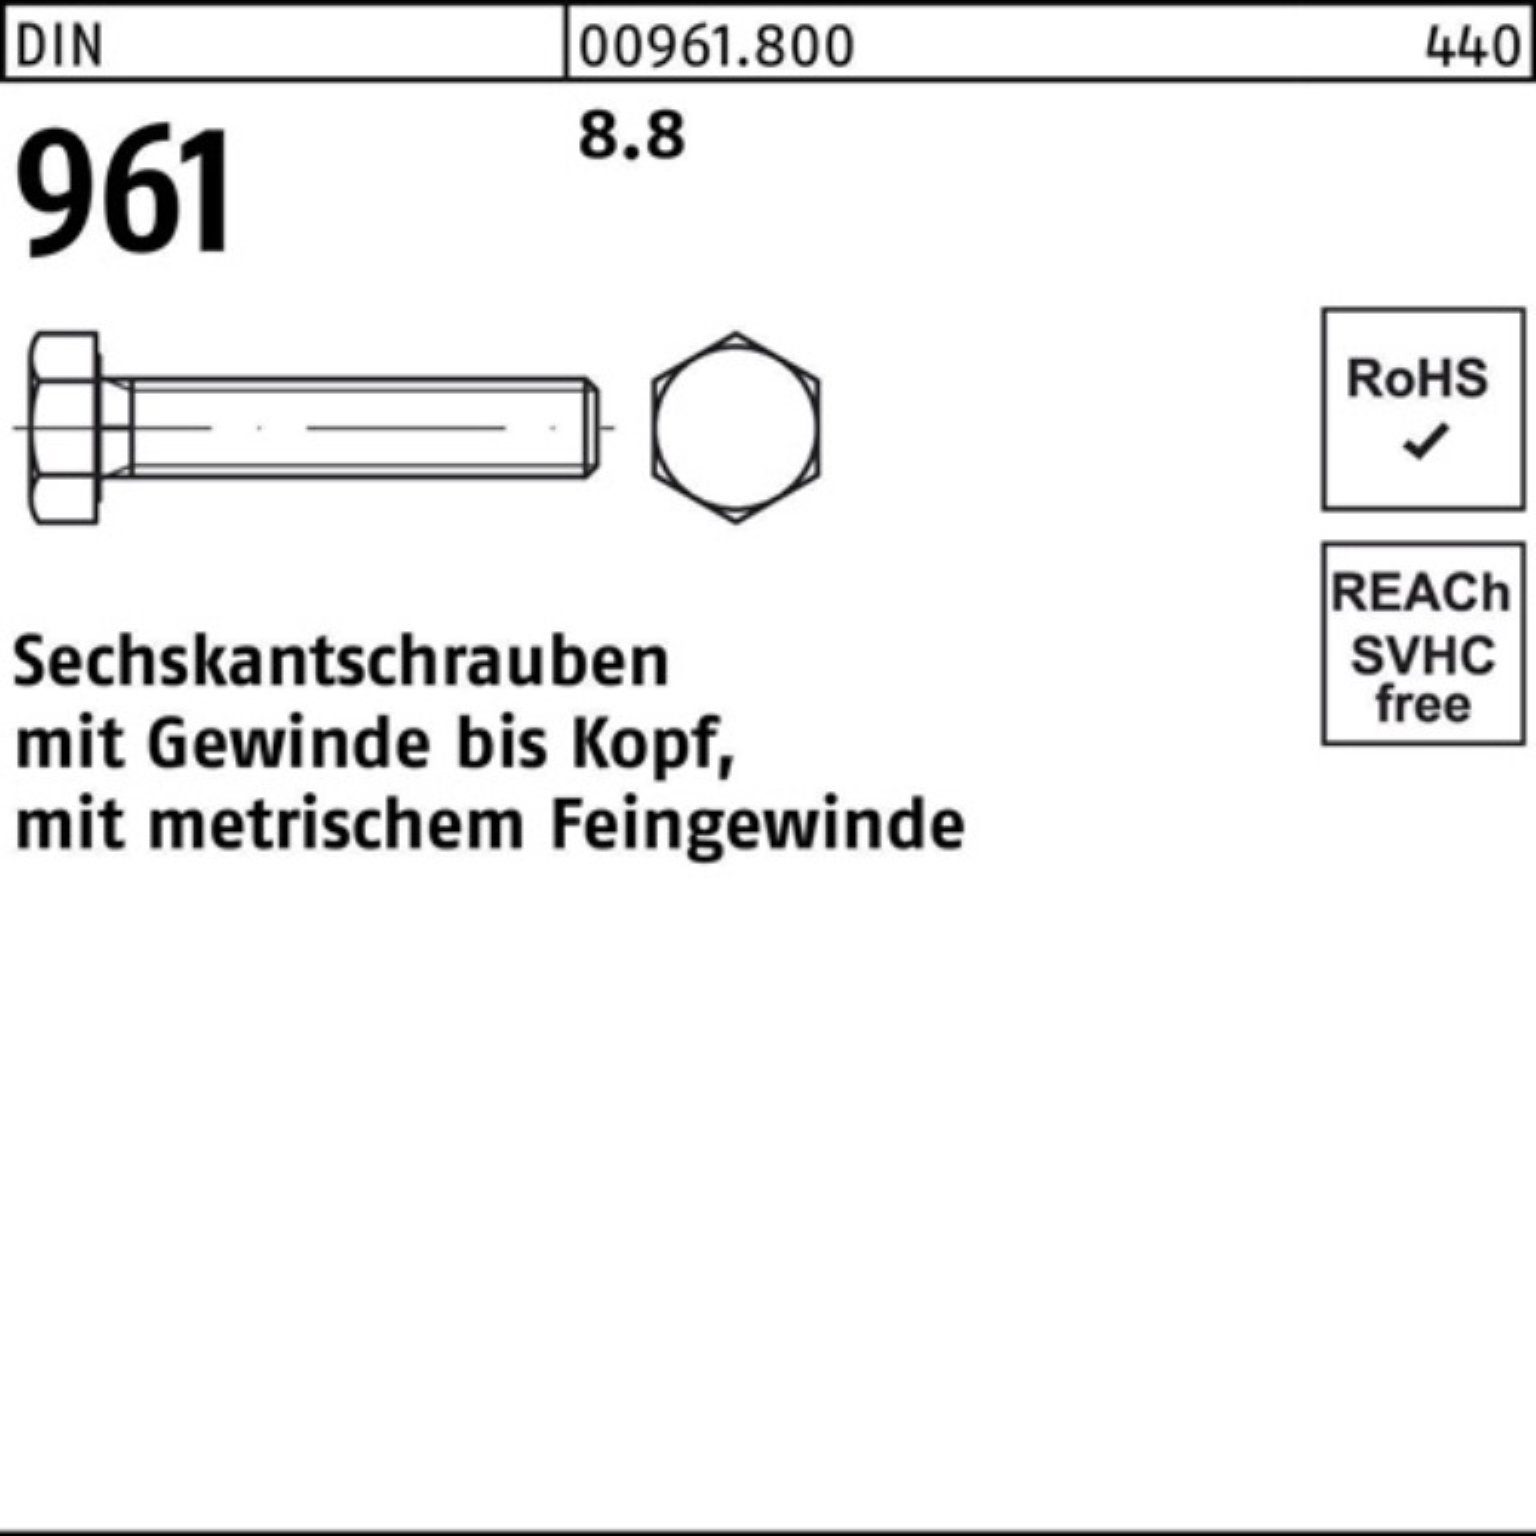 Sechskantschraube Reyher 961 Pack M20x1,5x 25 Sechskantschraube 100er 8.8 Stück 70 VG DIN DIN